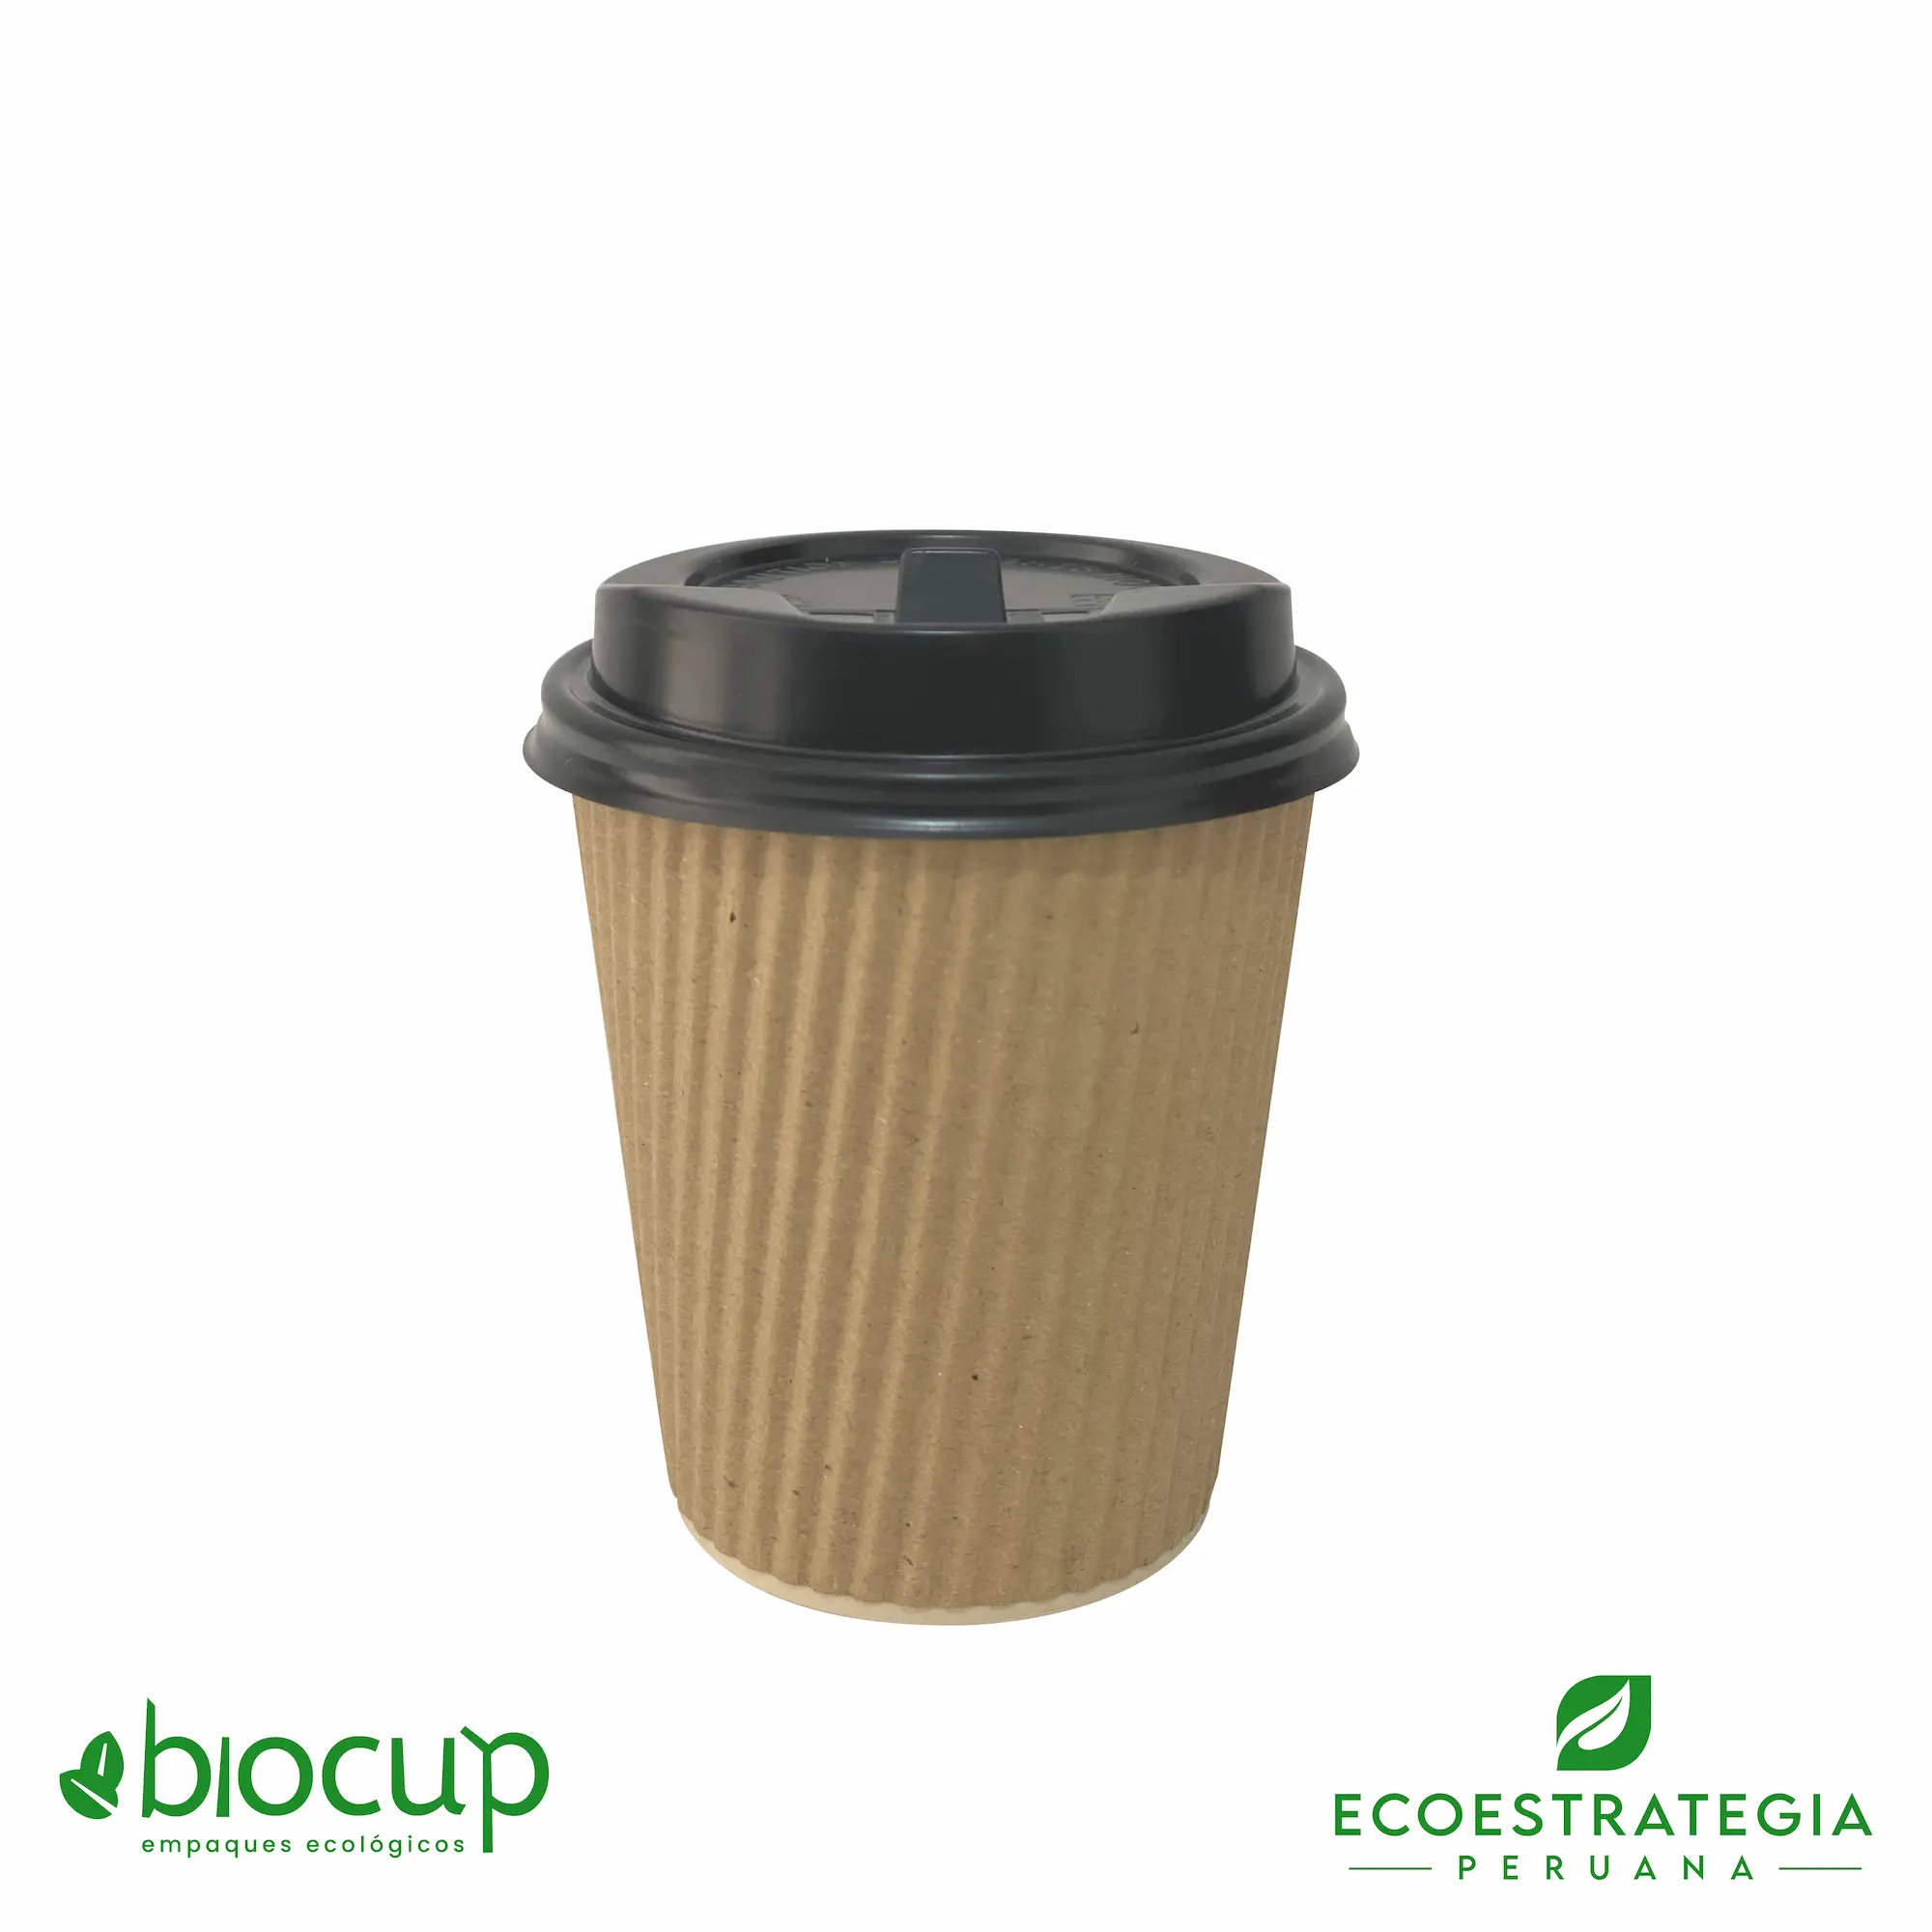 Vasos reciclable para bebidas calientes EP-BC8 también conocido como vasos corrugados 8 oz bambú, vasos corrugados biodegradables, vasos corrugados al por mayor, vasos corrugados biodegradables Perú, vasos biodegradables 8oz, vasos corrugados personalizable, vasos biodegradables con tapa 8oz, vasos biodegradables material, vasos biodegradables 8 oz precio, vasos para bebidas calientes 8 oz, vasos ecológicos 8 oz, vasos compostables 8 oz, vasos sostenibles 8 oz, vaso liso bioform 8 oz, vaso ripple 8 oz, vaso eco cup 8 oz, importador de vasos corrugado, fabricante de vasos corrugados, distribuidores de vasos corrugados, mayoristas de vasos corrugados, vasos corrugados lima Perú